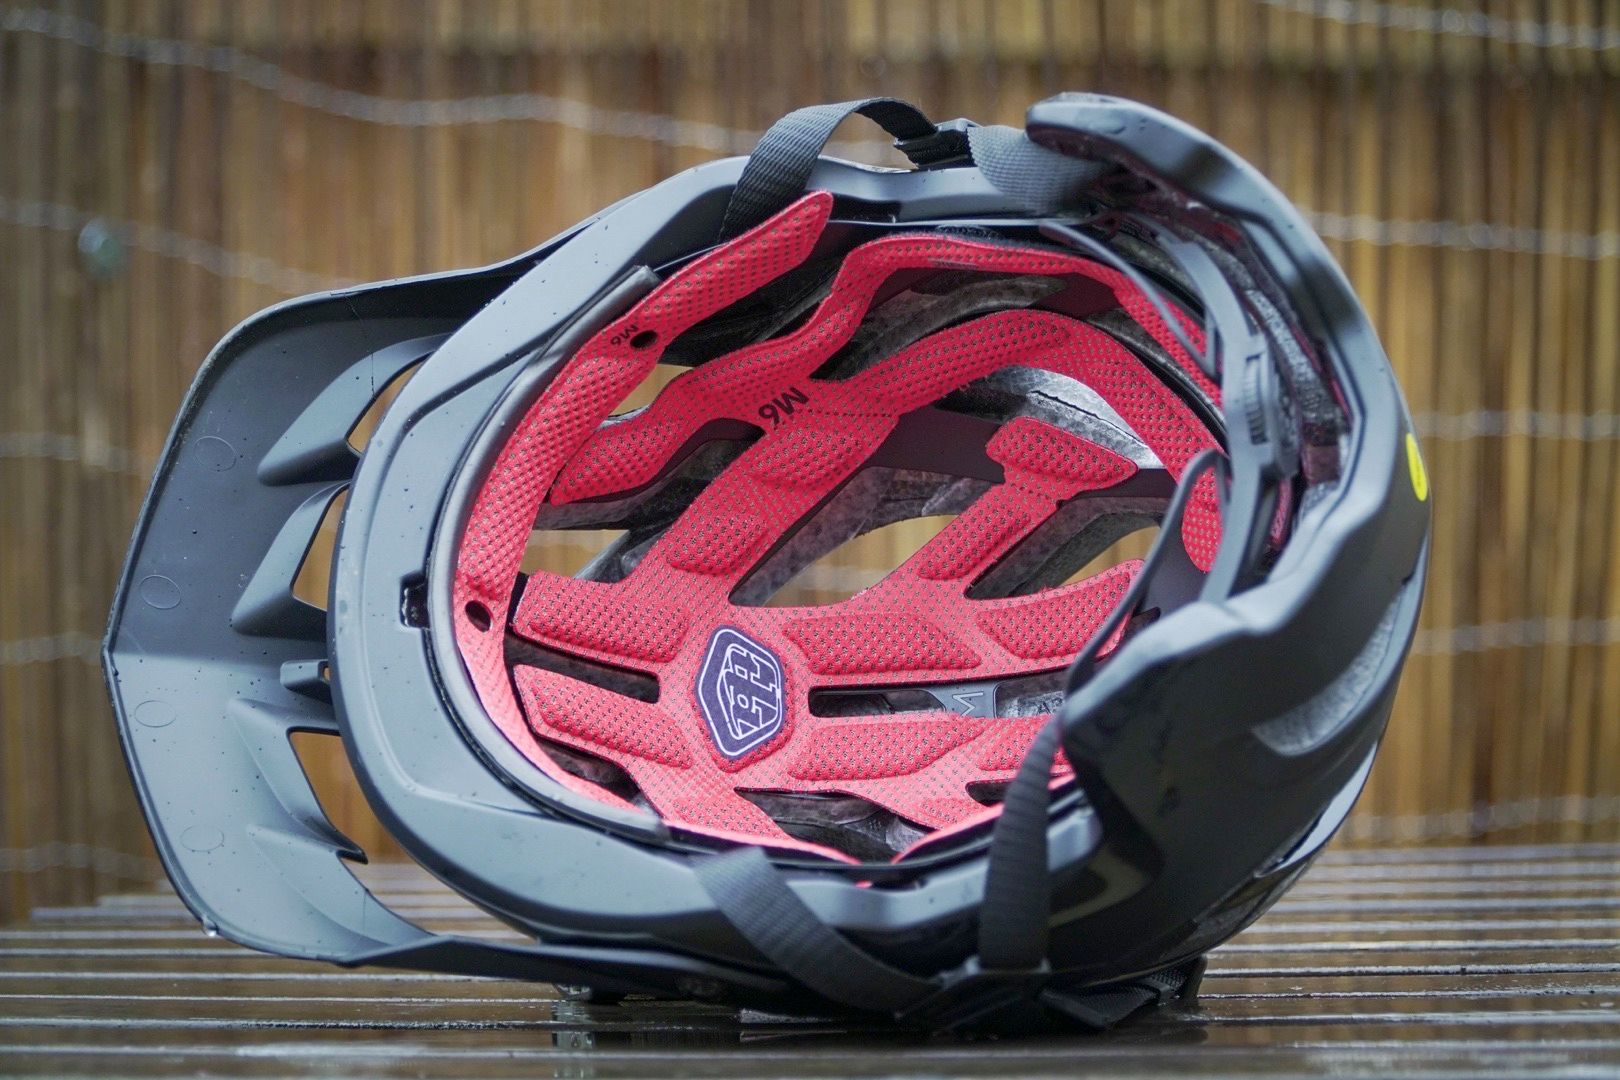 Troy Lee Designs A3 Helmet review